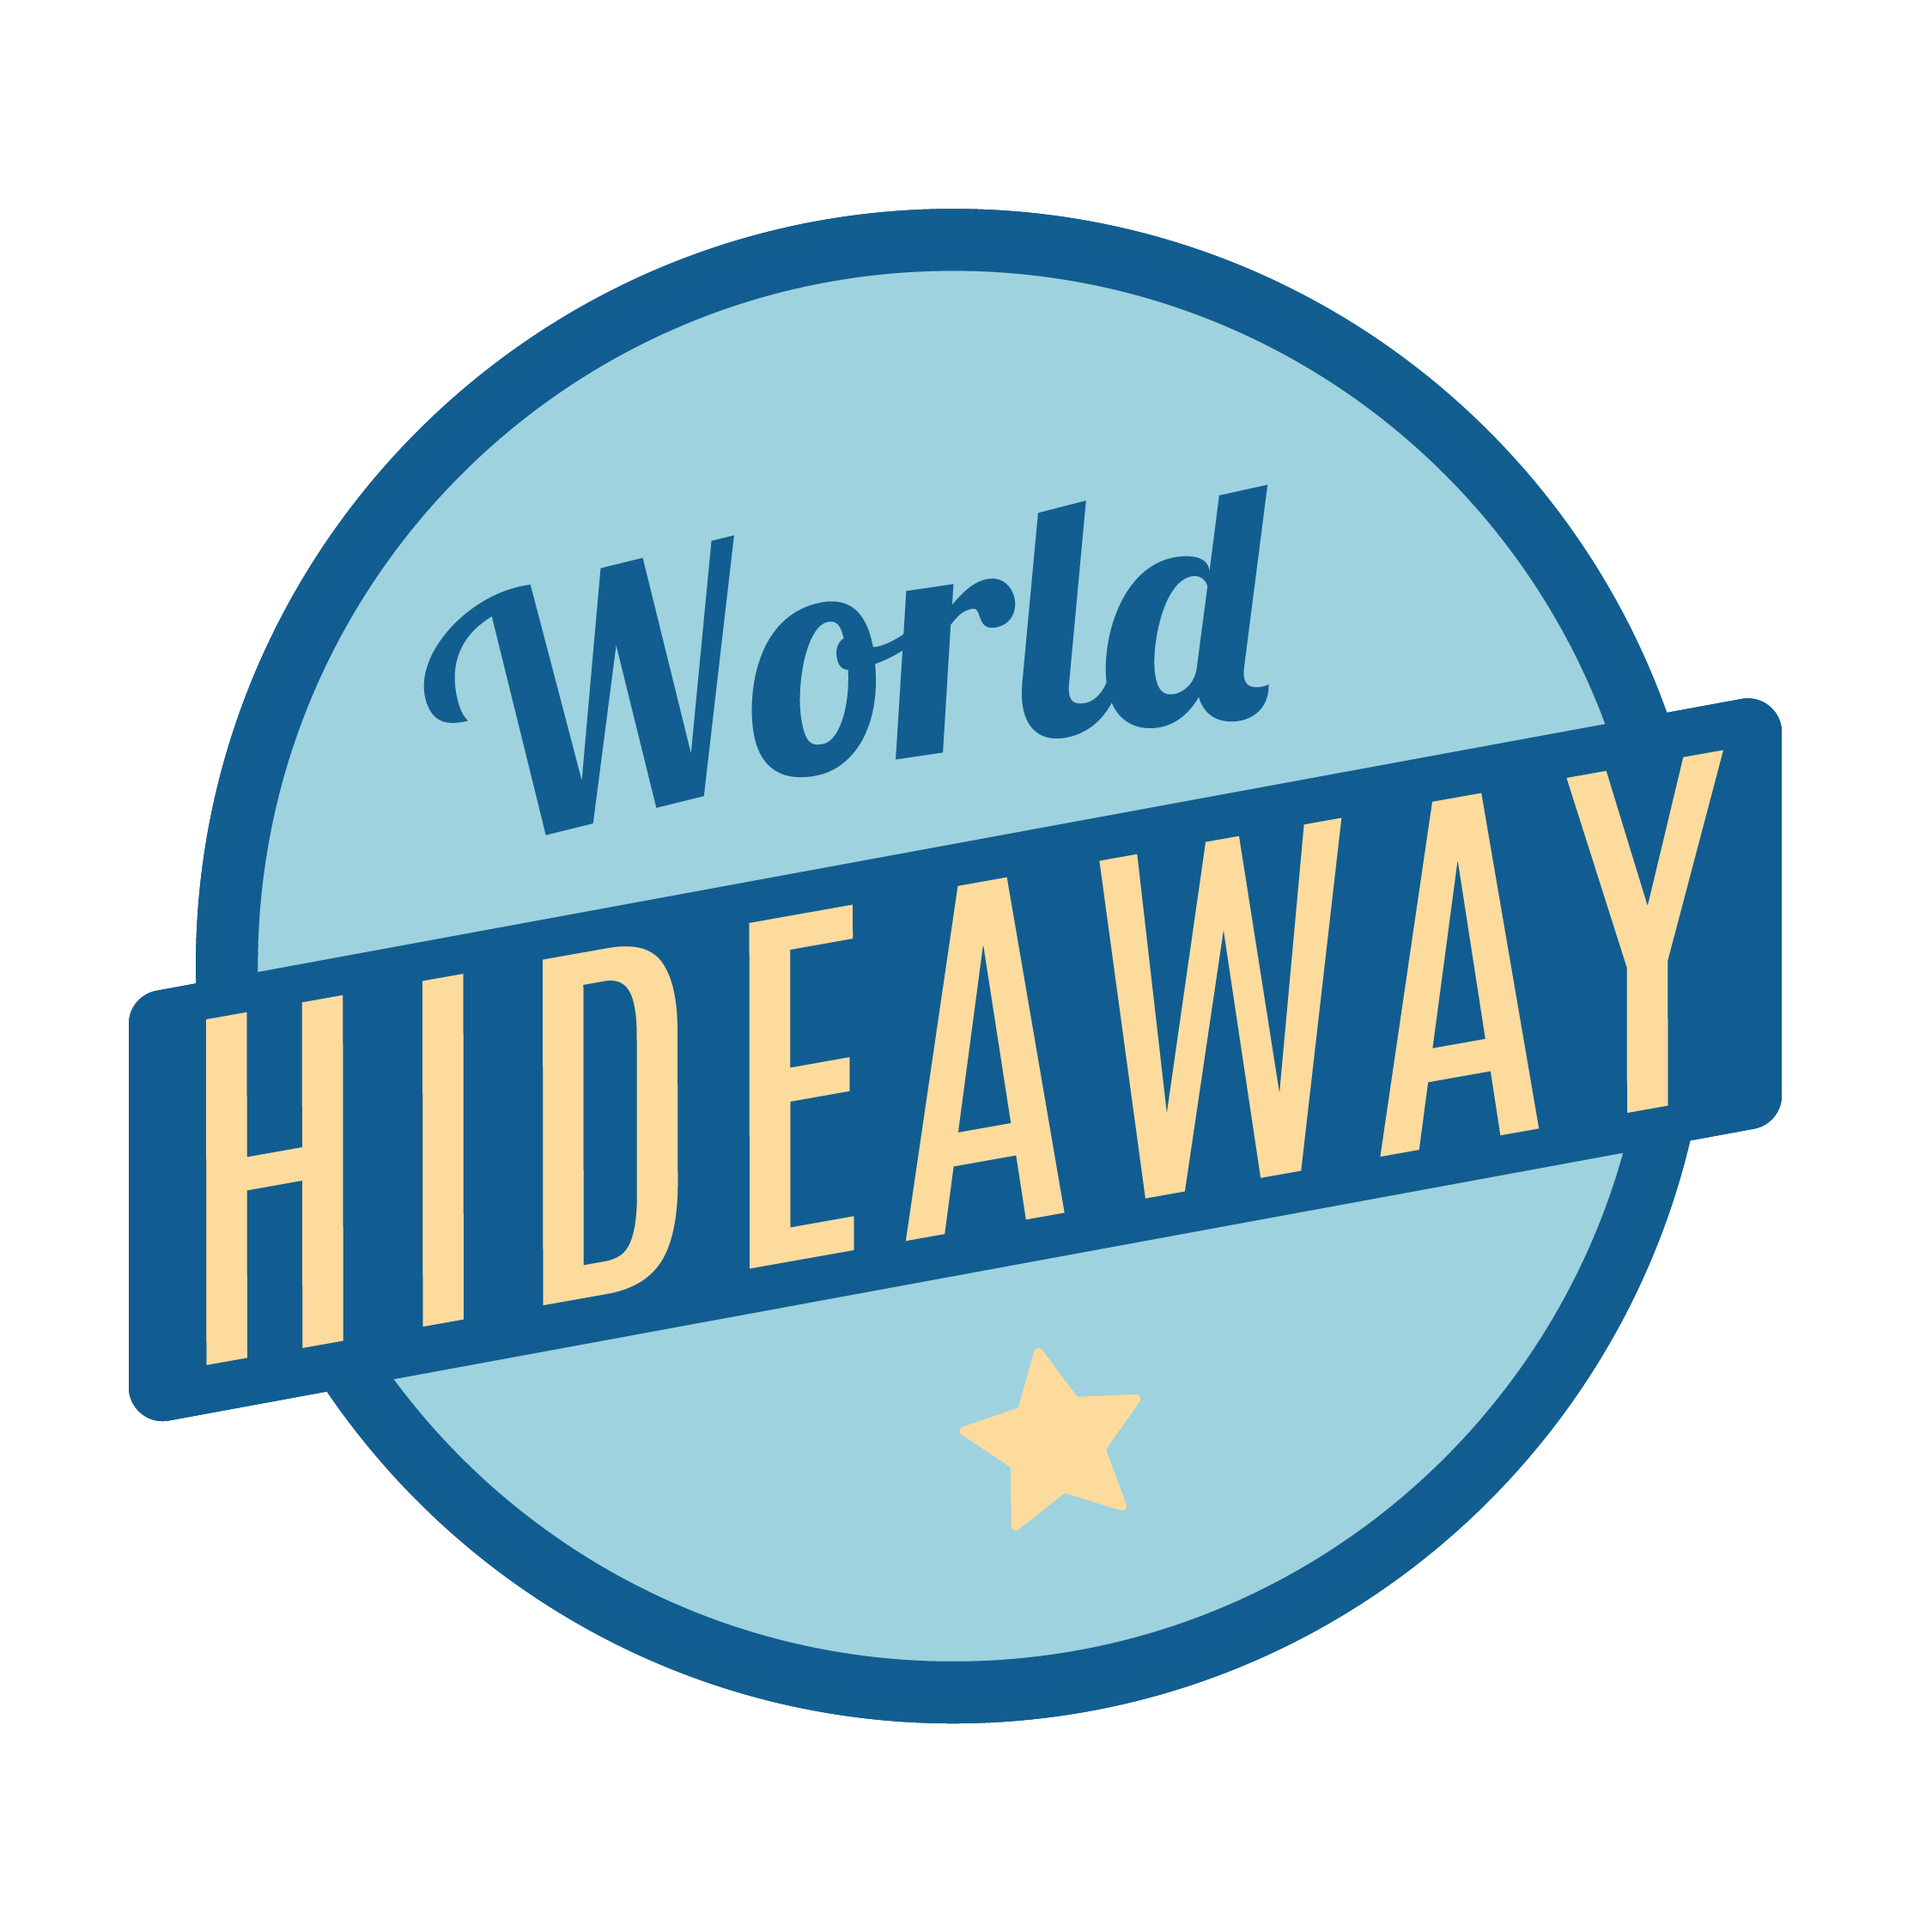 World Hideaway